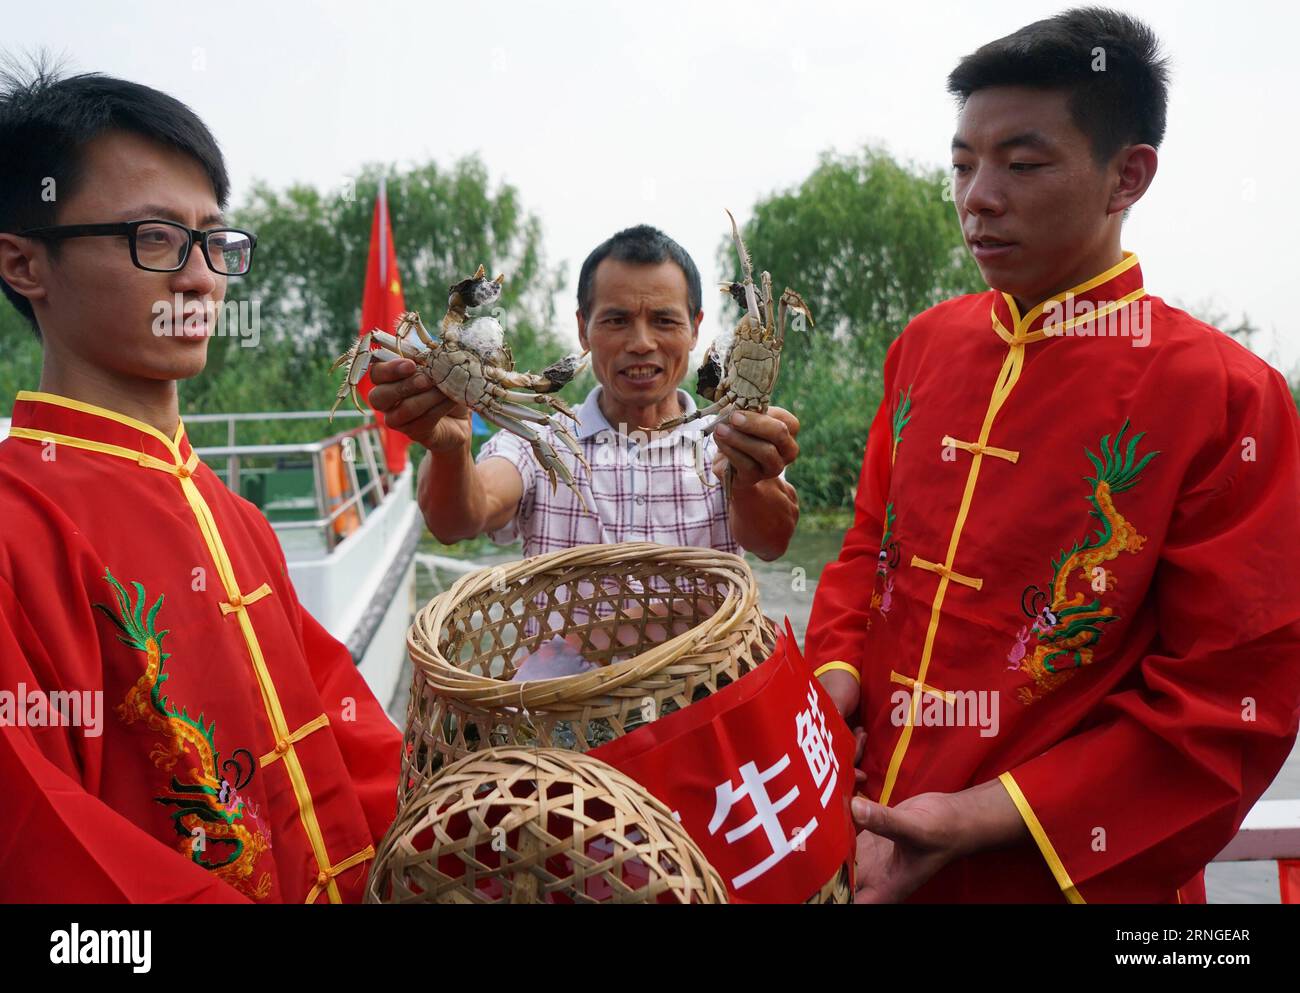 SUZHOU, le 23 septembre 2016 -- Un pêcheur (C) montre des crabes chinois à moufles sur le lac Yangcheng à Suzhou, dans la province du Jiangsu, dans l'est de la Chine, le 23 septembre 2016. La saison de récolte 2016 pour le crabe moufle chinois (Eriocheir sinensis) dans le lac Yangcheng, une importante région productrice, a débuté vendredi. Aussi connu sous le nom de grand crabe d'écluse, les crabes chinois à mitaines sont appréciés par de nombreux amateurs de gourmets. (wx) CHINA-JIANGSU-YANGCHENG LAKE-CHINESE MITTEN CRABE-MOISSON (CN) JixChunpeng PUBLICATIONxNOTxINxCHN Suzhou septembre 23 2016 un pêcheur C montre des crabes moyens chinois SUR le lac Yang Cheng dans le sud-est C de Suzhou Banque D'Images